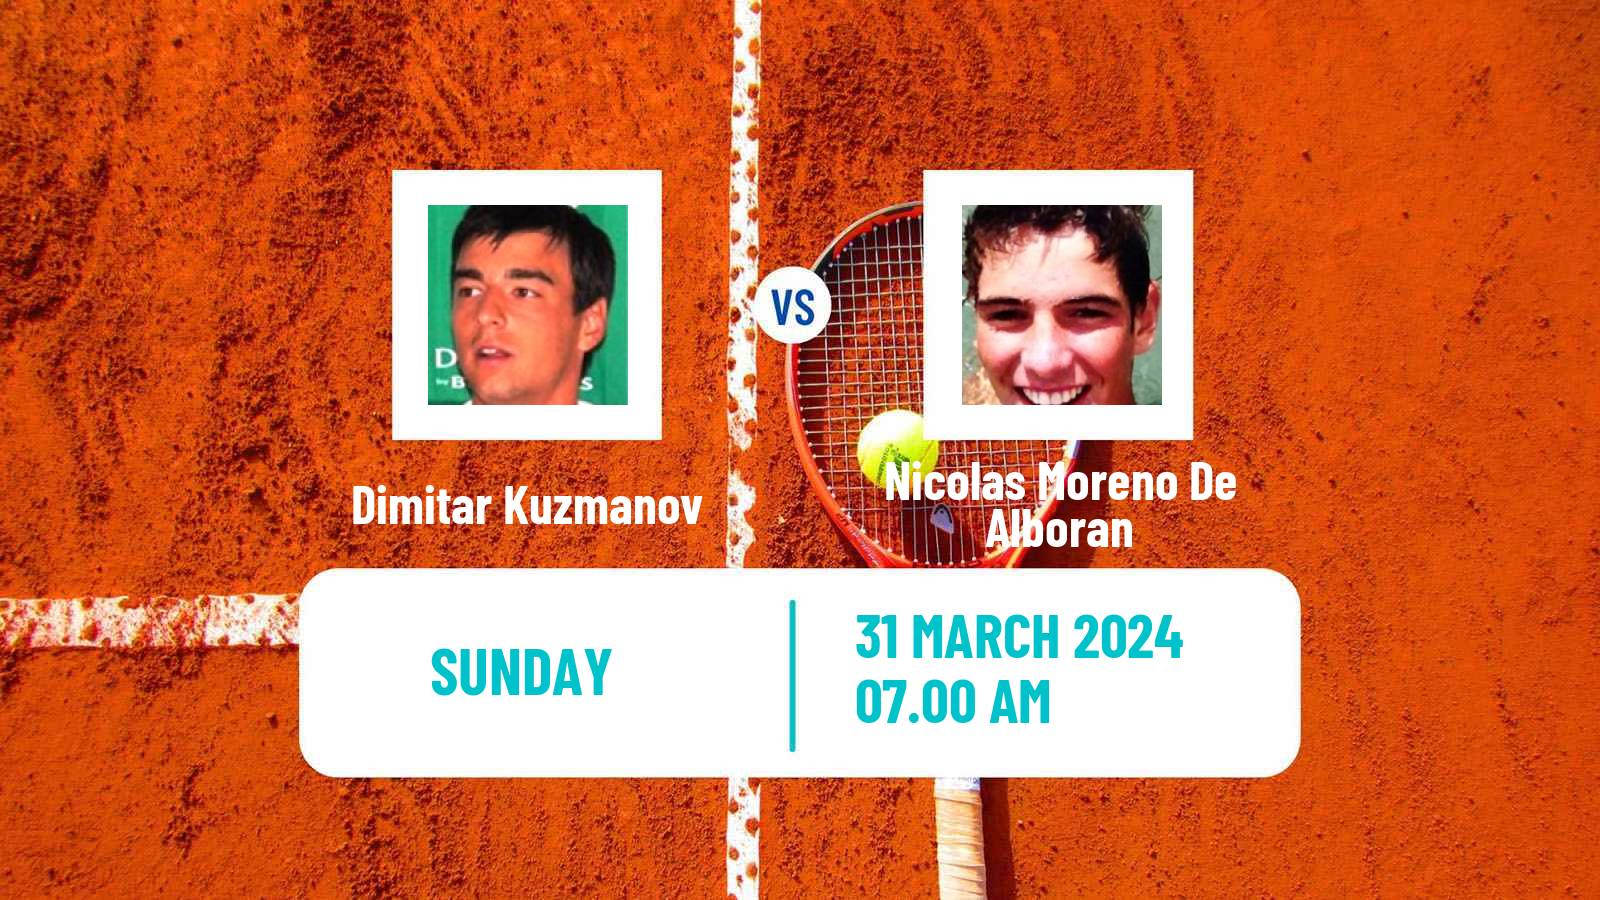 Tennis ATP Marrakech Dimitar Kuzmanov - Nicolas Moreno De Alboran